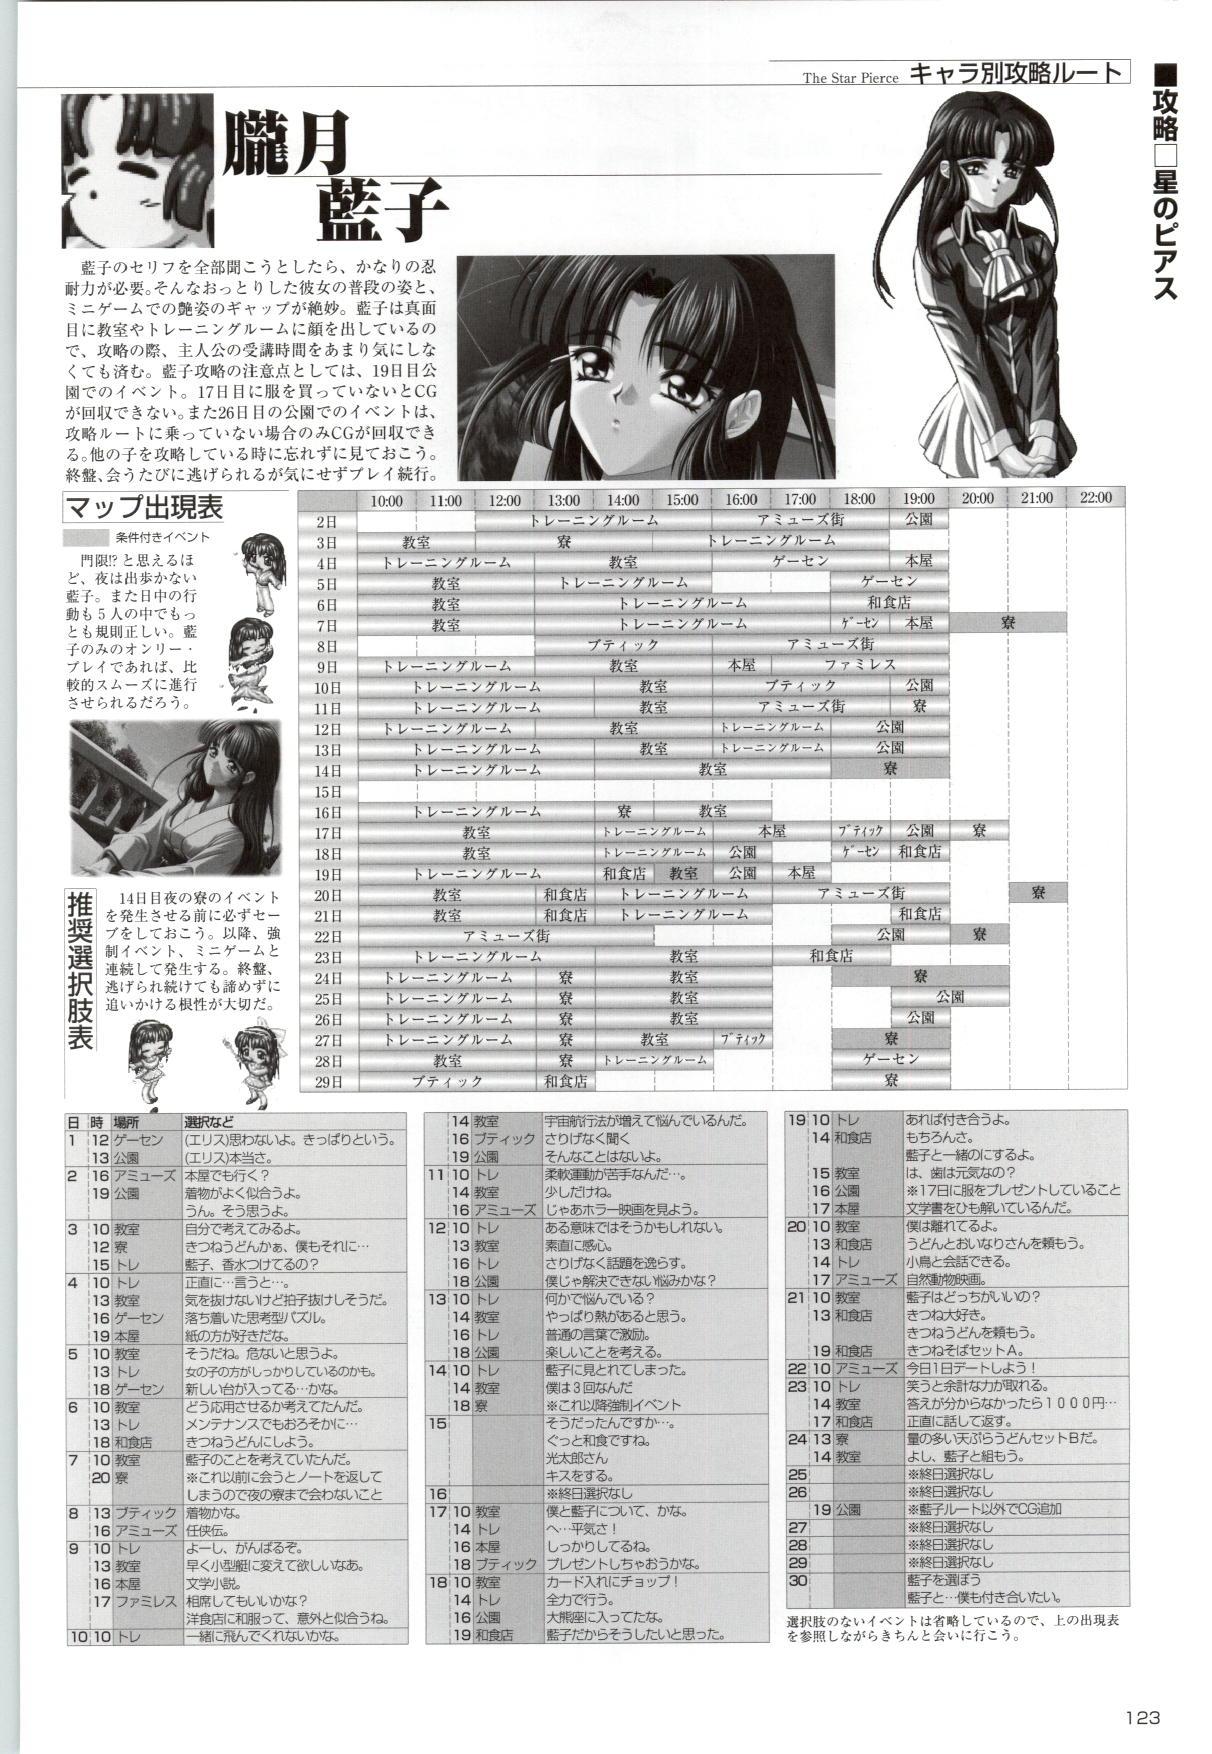 [Kinmedai Pink] ACTRESS Collection Kizuna + Seduce ~Yuuwaku~ + Hoshi no Pierce Computer Graphics & Original Pictures 123